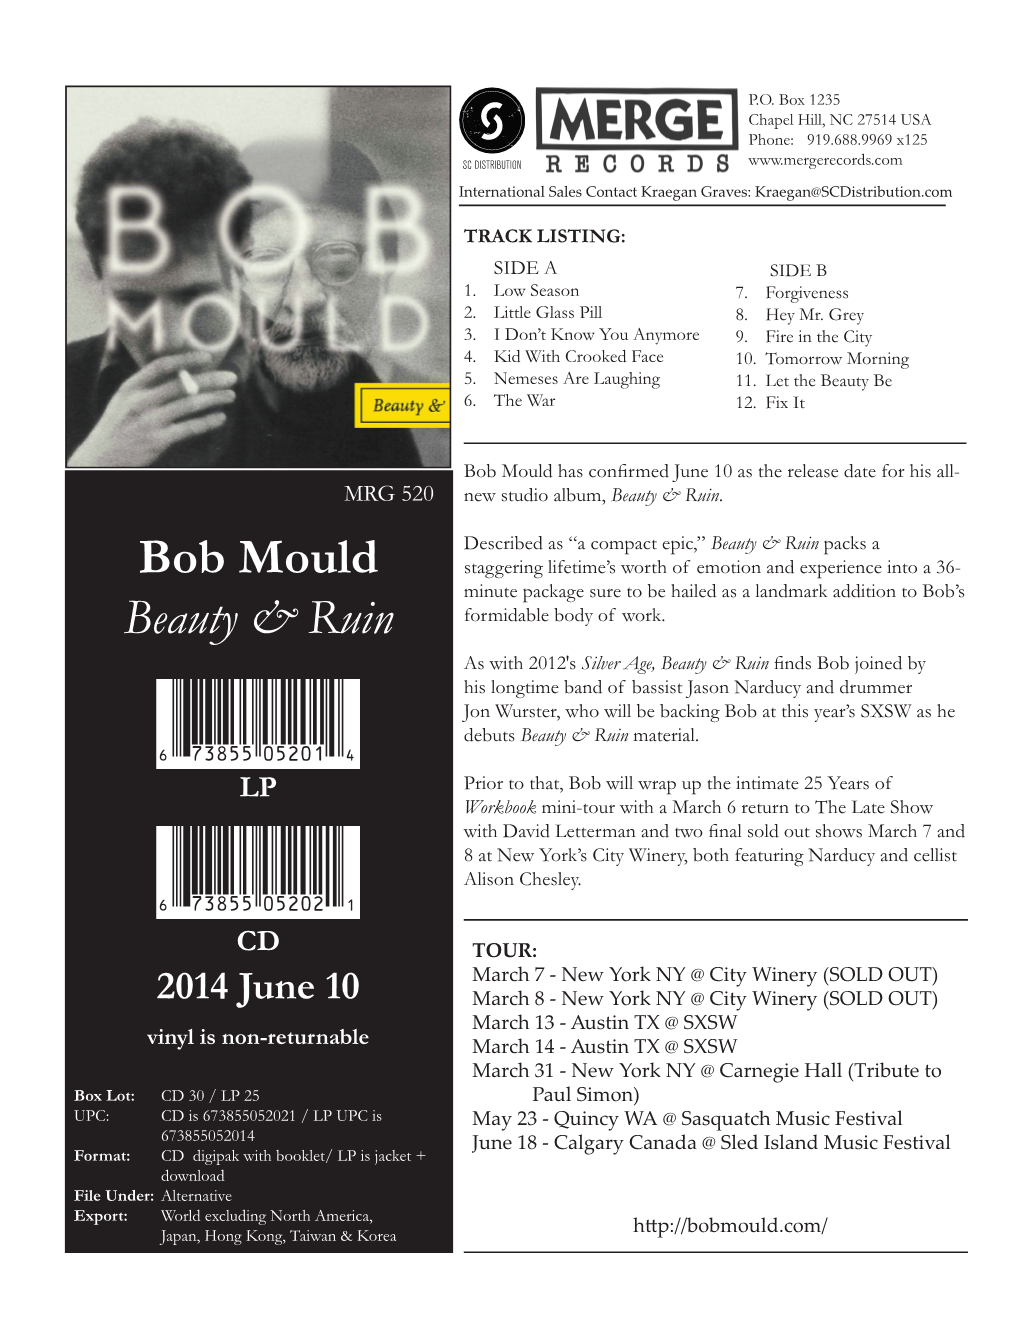 Bob Mould Beauty & Ruin